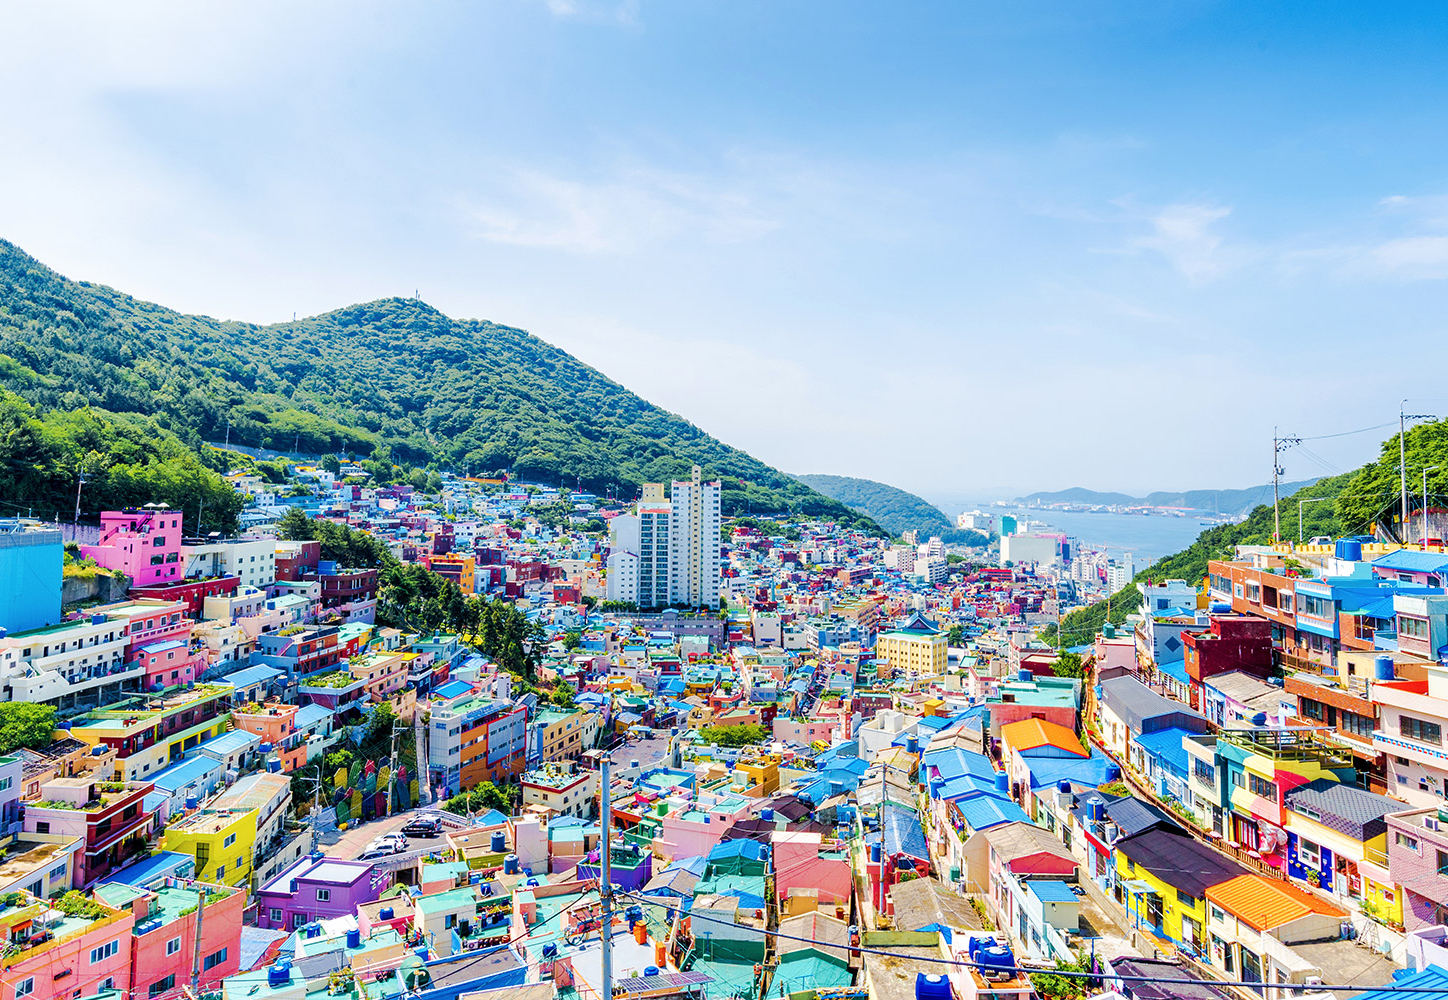 Du lịch Hàn Quốc mùa Thu - Daegu - Gyeongju - Busan từ Hà Nội giá tốt